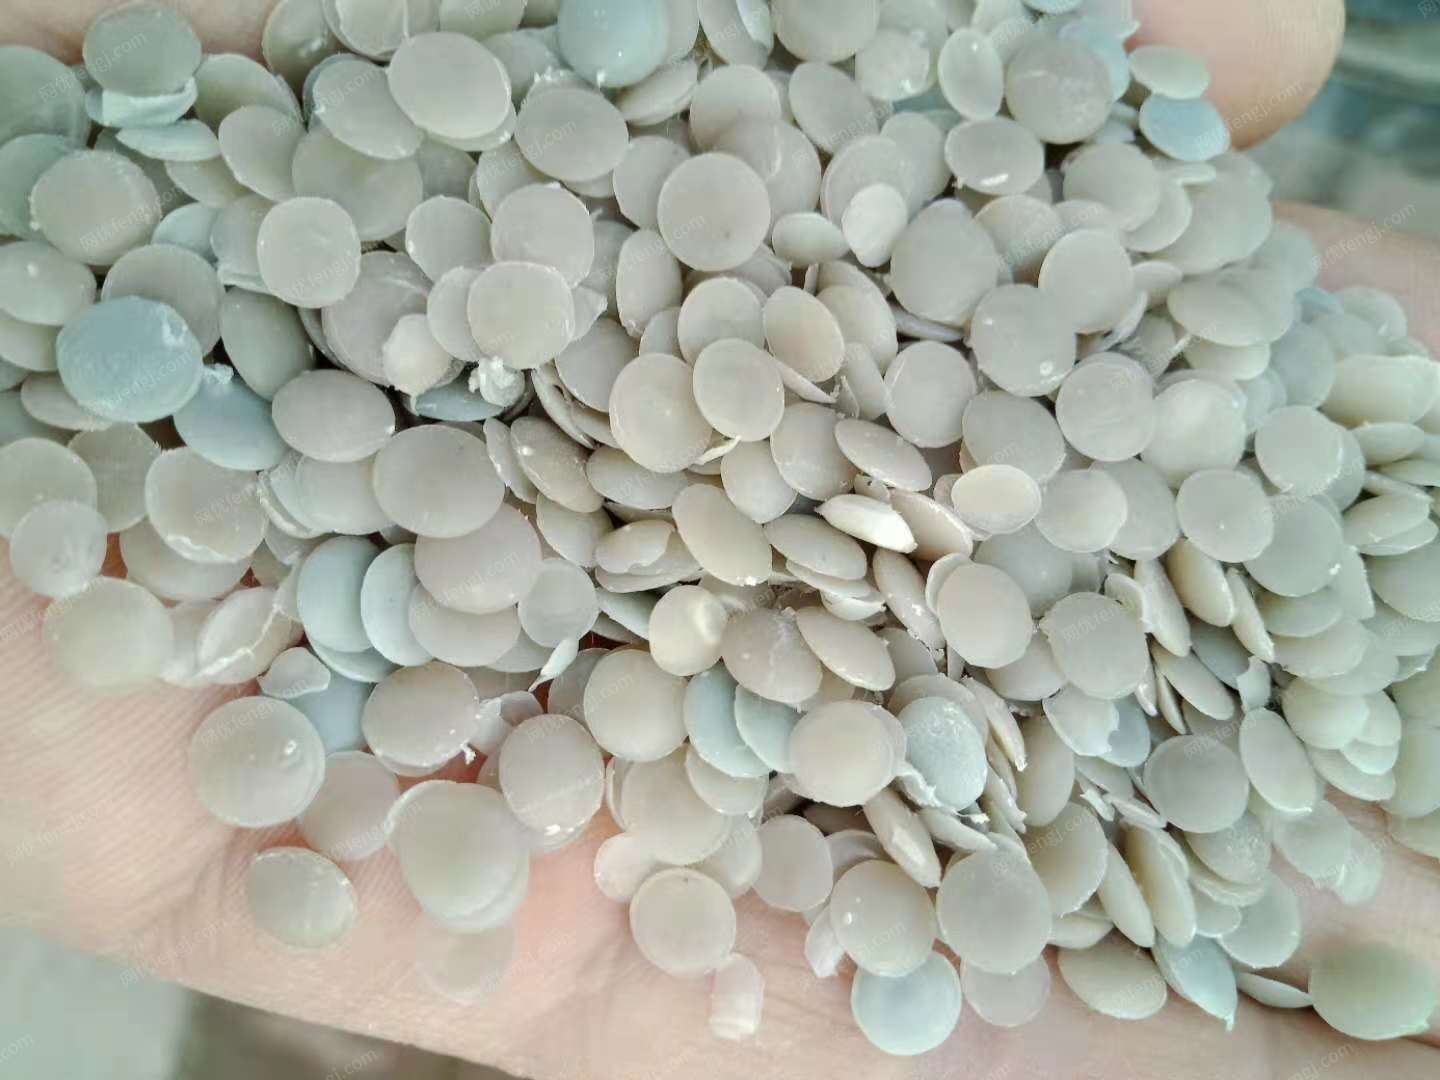 东莞市万江科艺塑料制品厂采购白透PE再生颗粒每月120吨